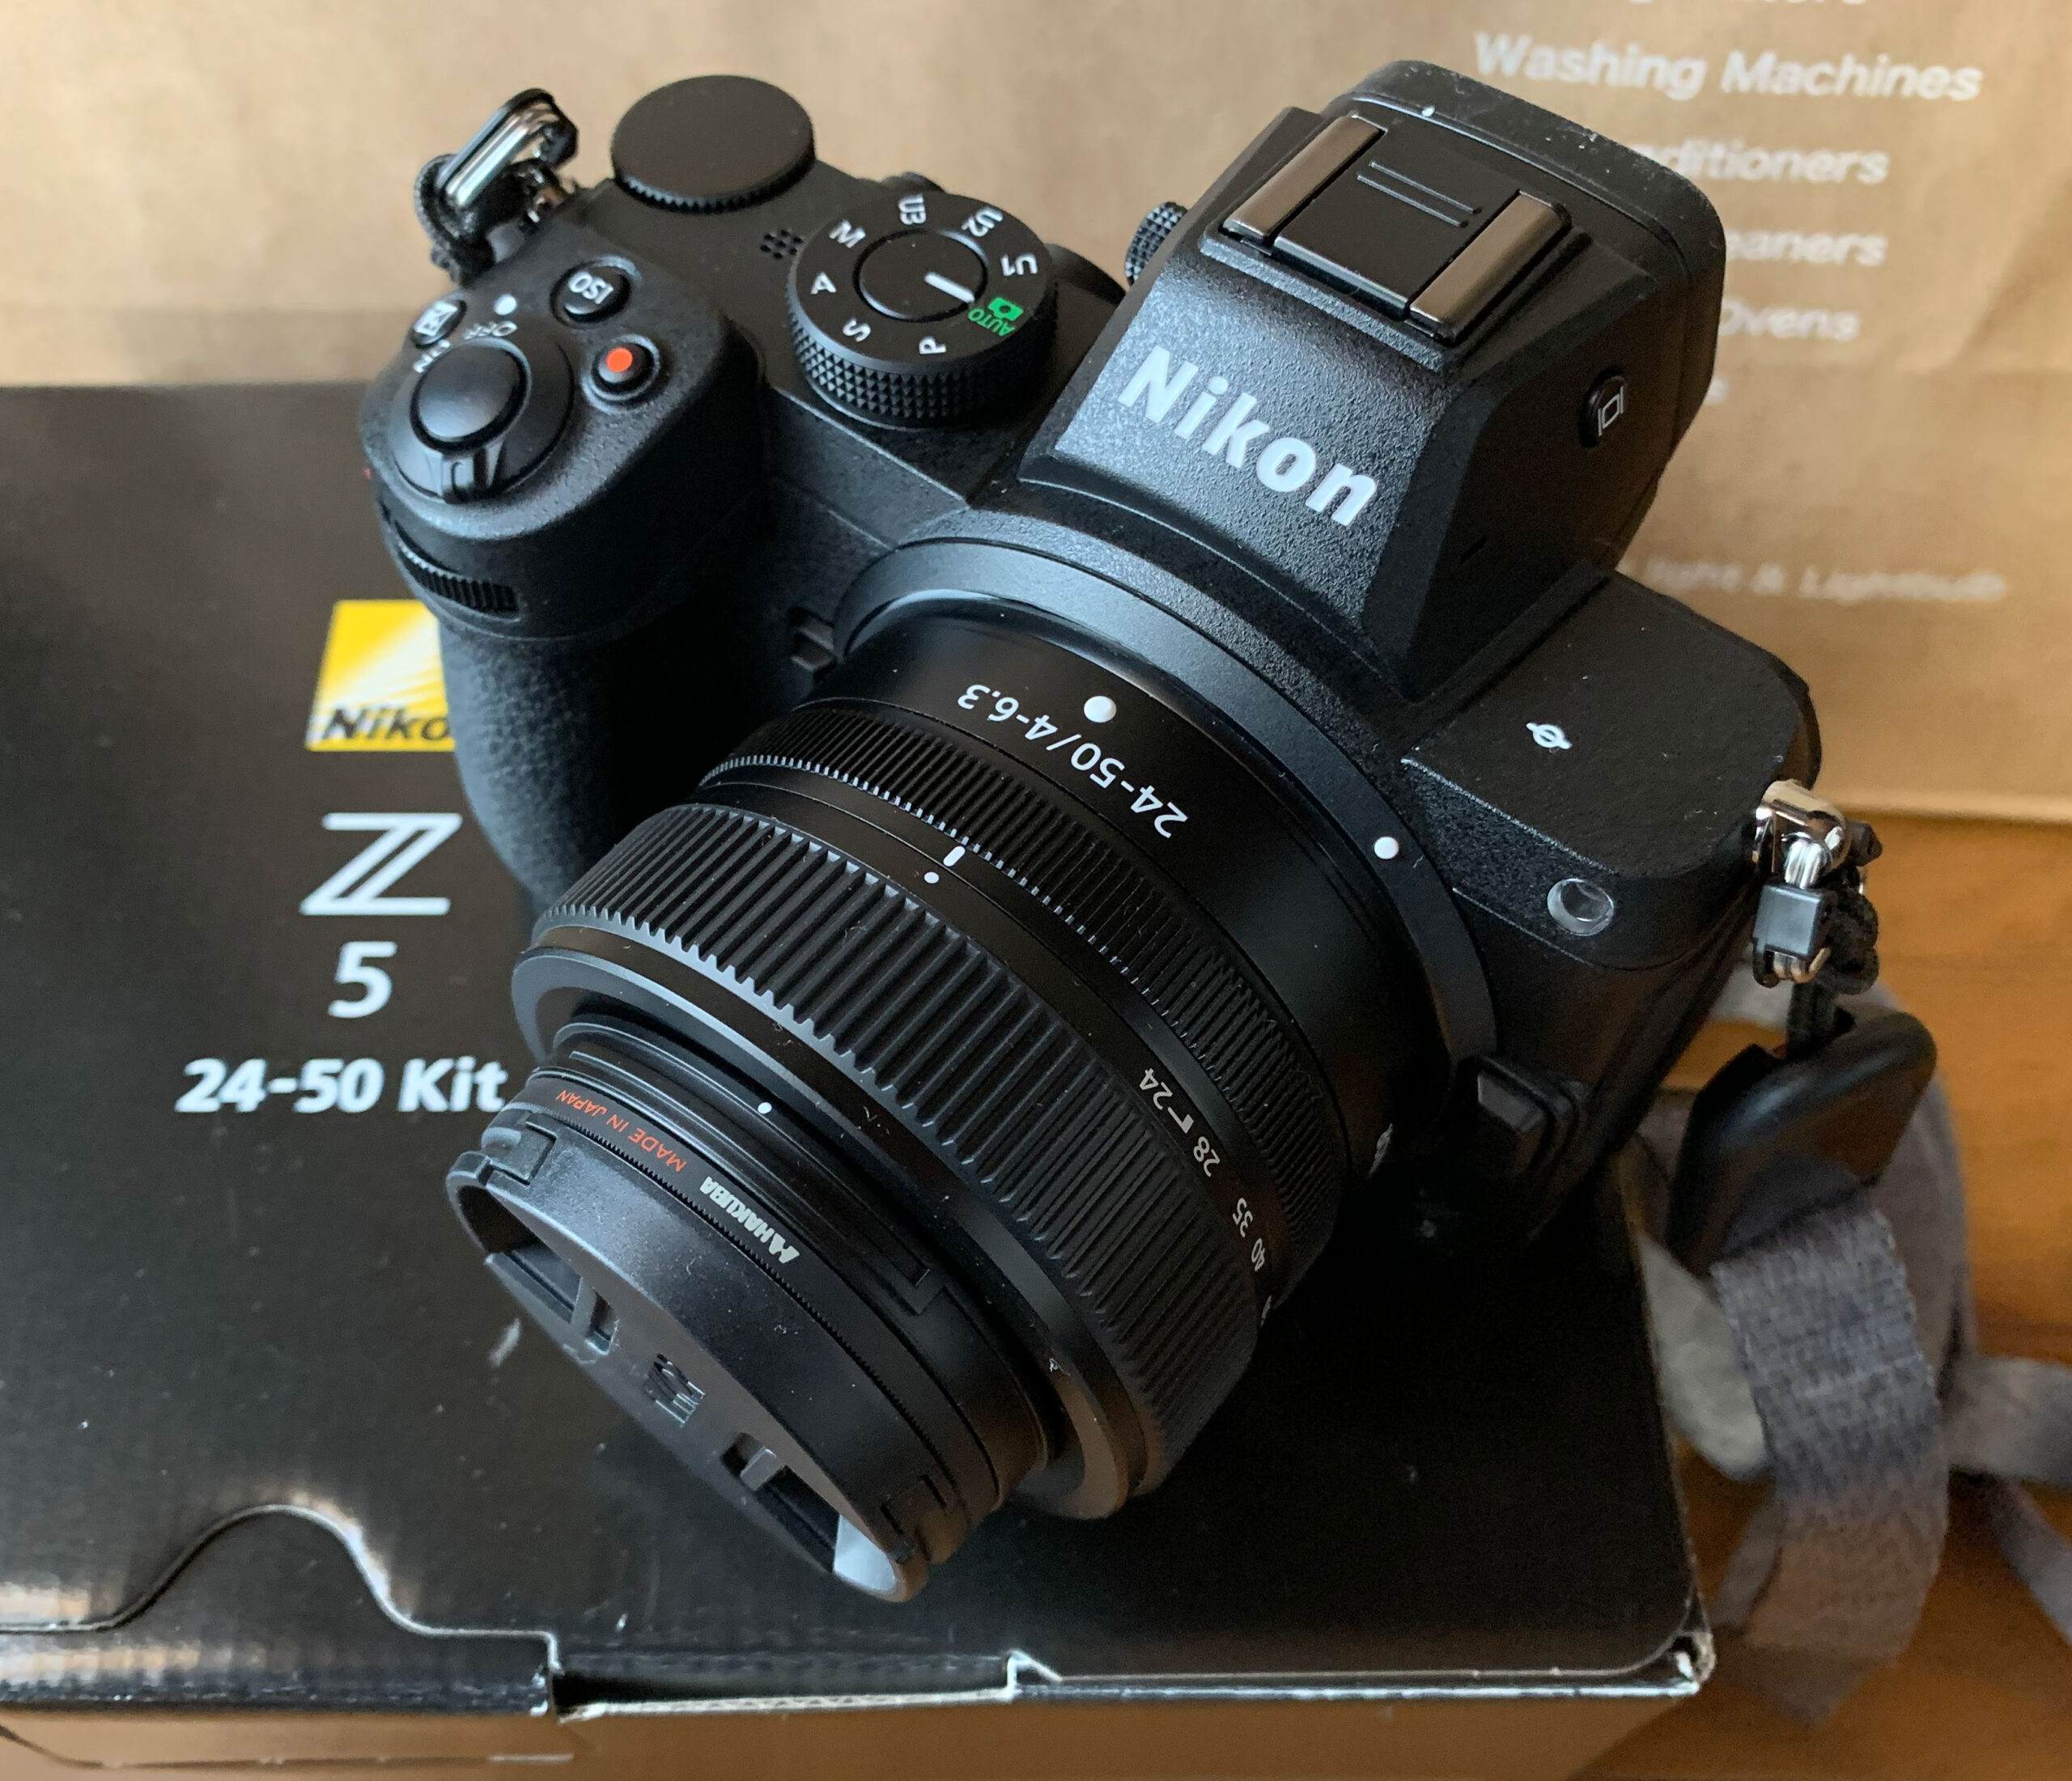 ニコンのミラーレスカメラ「Z 5」を購入、関連小物も紹介。 The modern stone age.